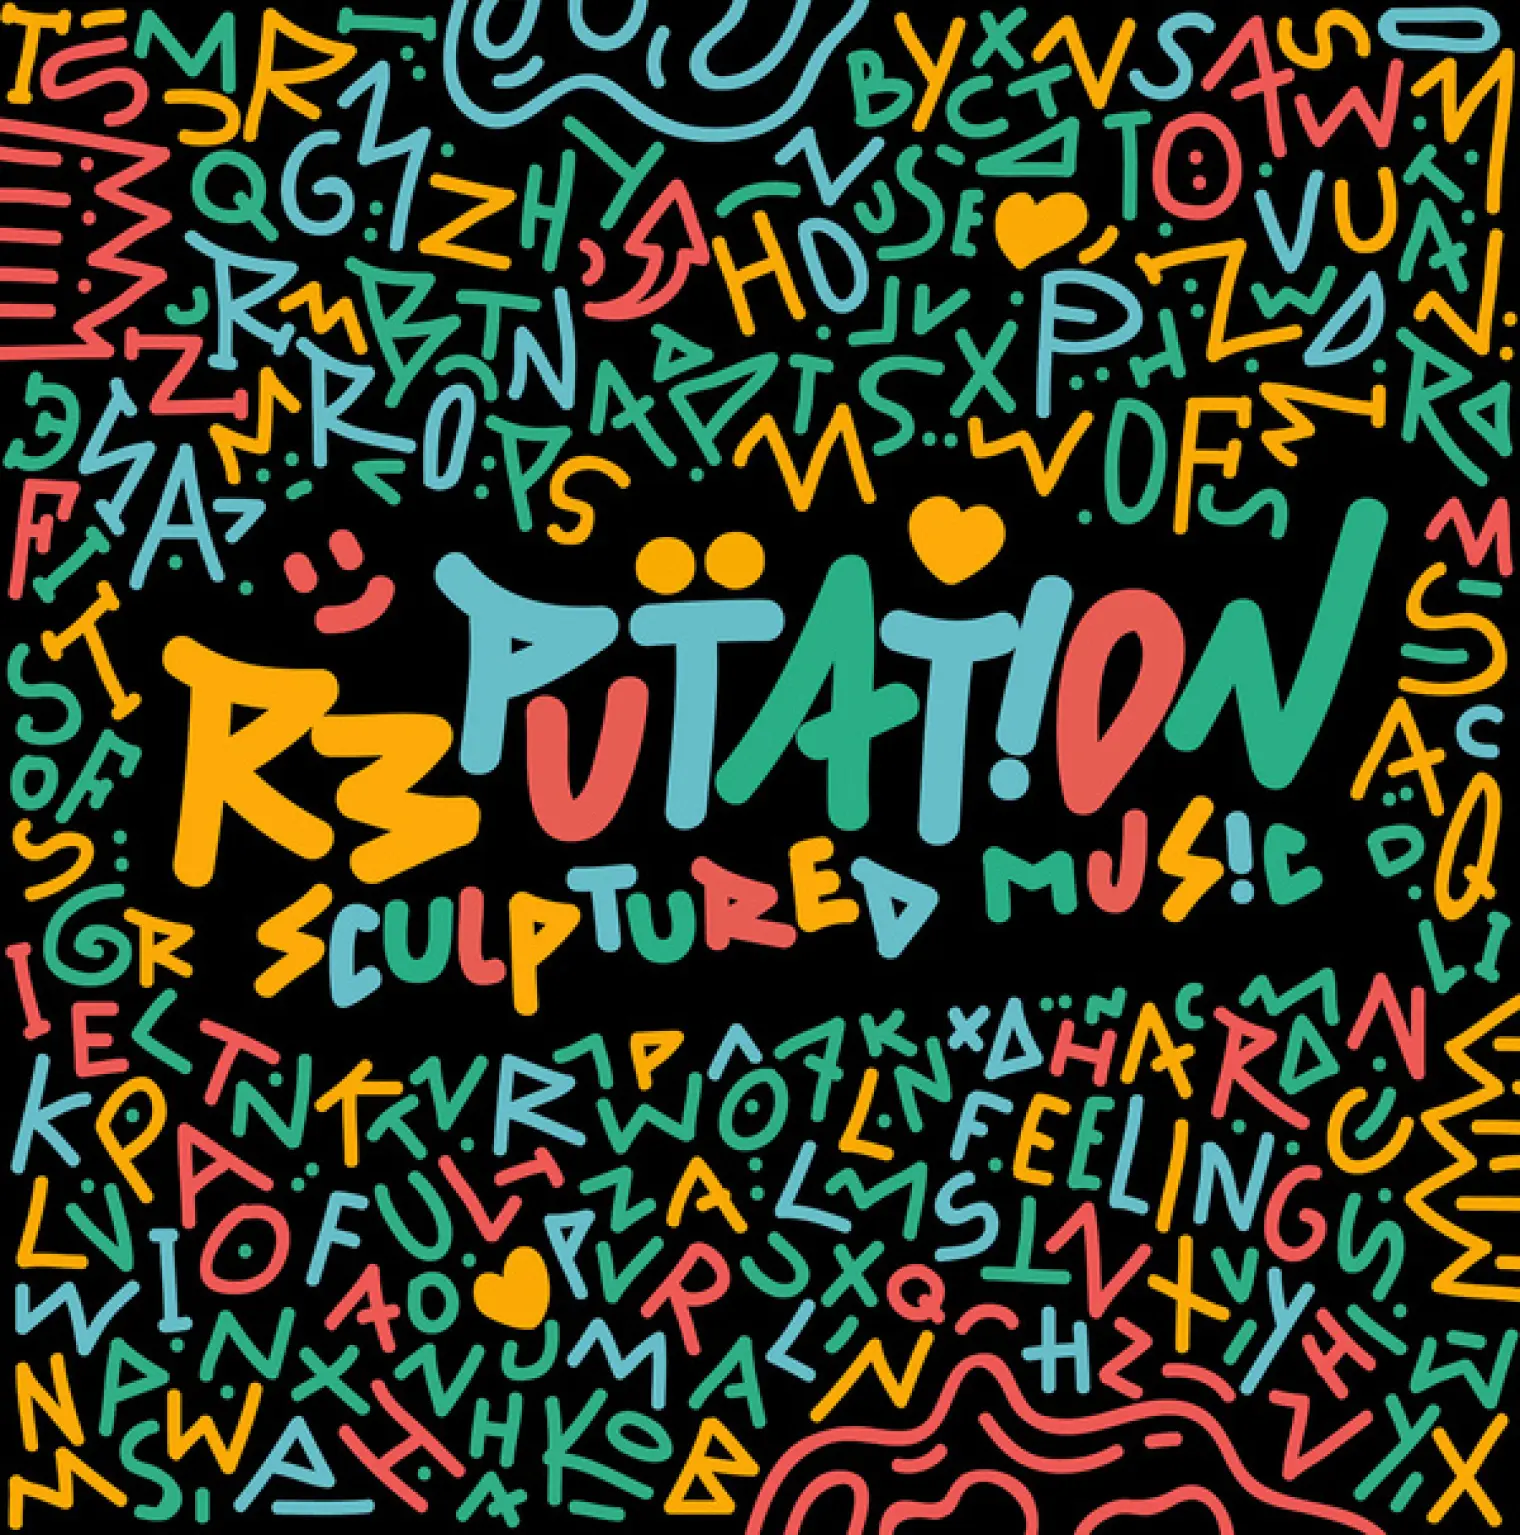 Reputation -  SculpturedMusic 